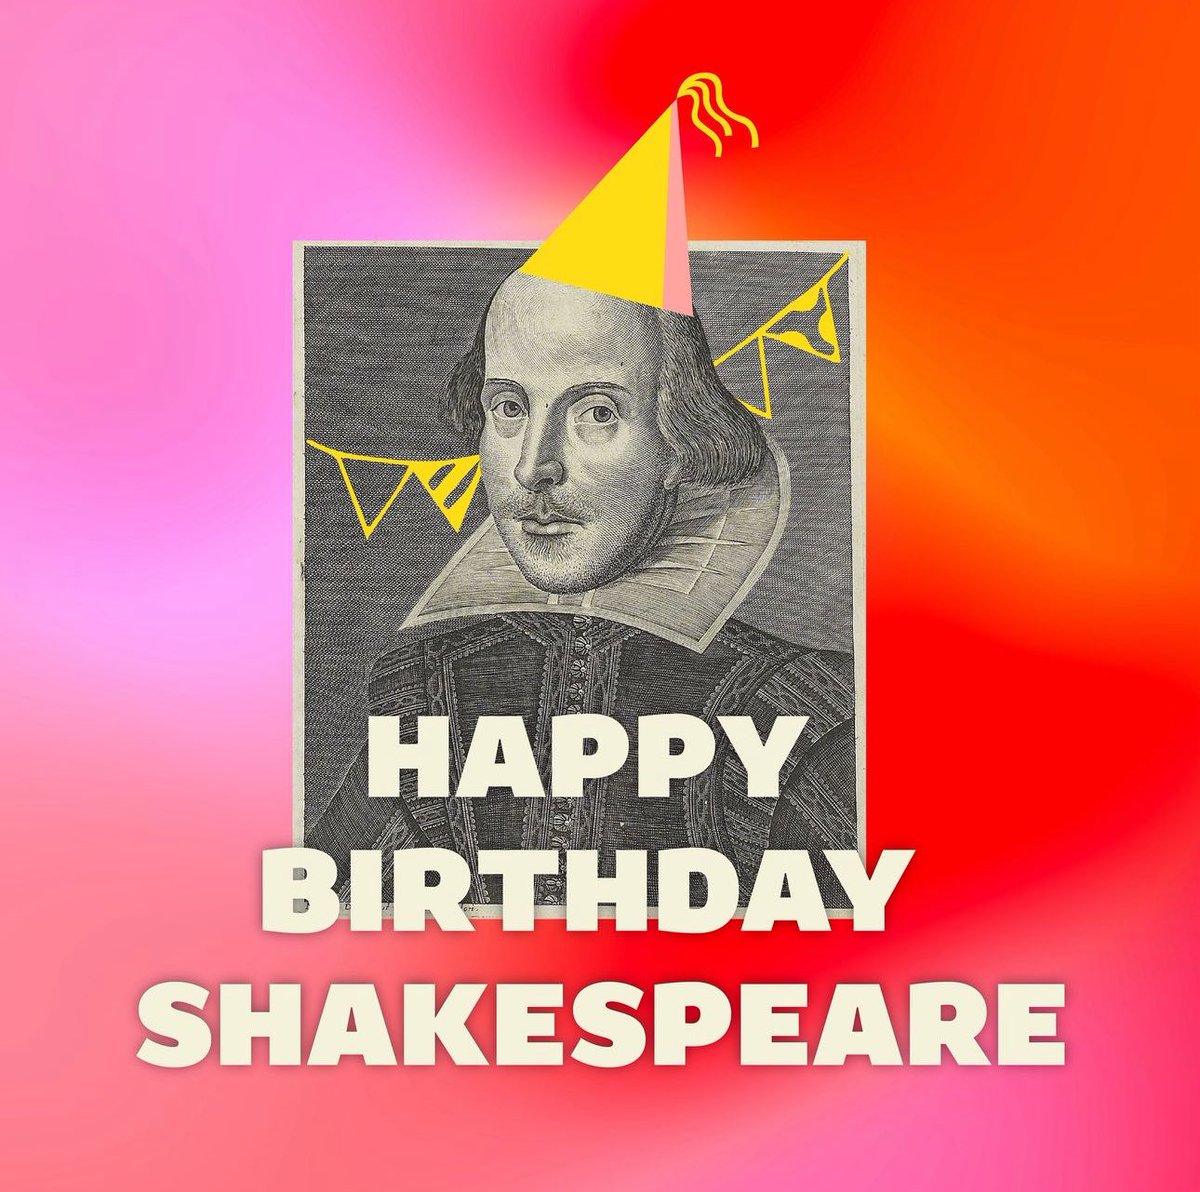 İyi ki doğdun patron! ♥️

Shakespeare bugün 460. yaşını kutluyor.

“Cehennem boş; tüm şeytanlar burada.”